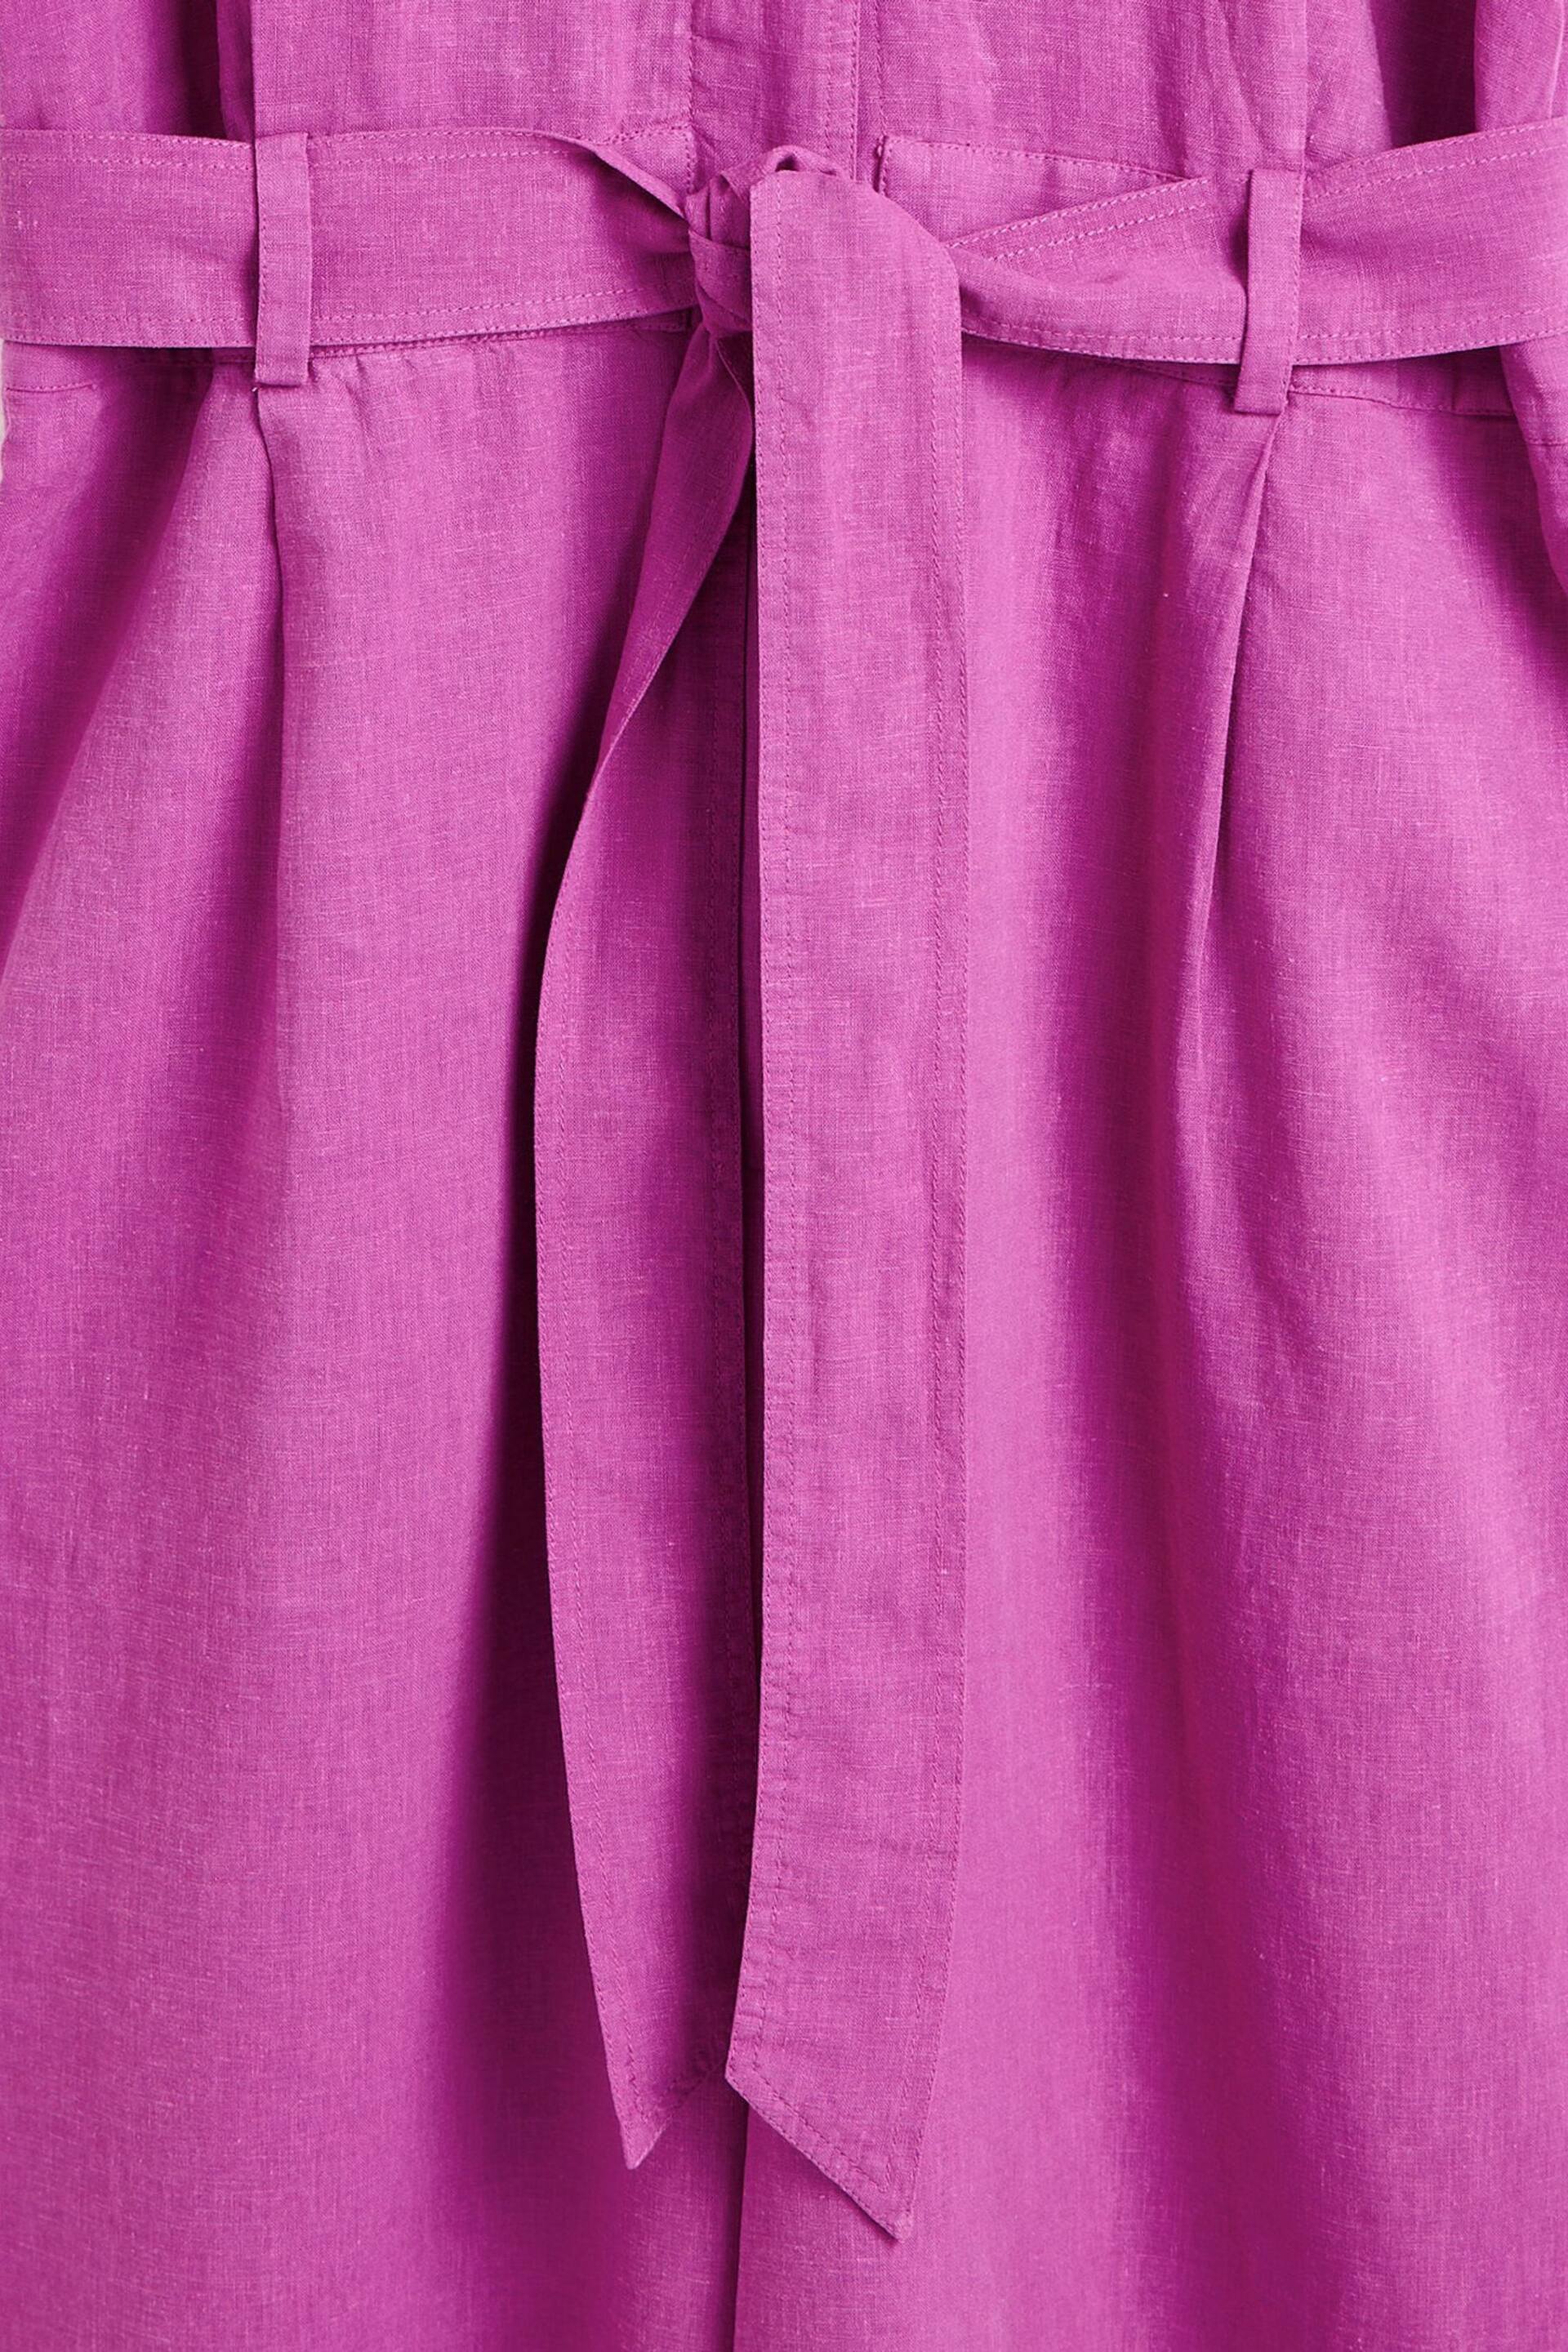 Oliver Bonas Purple Belted Linen Jumpsuit - Image 6 of 8